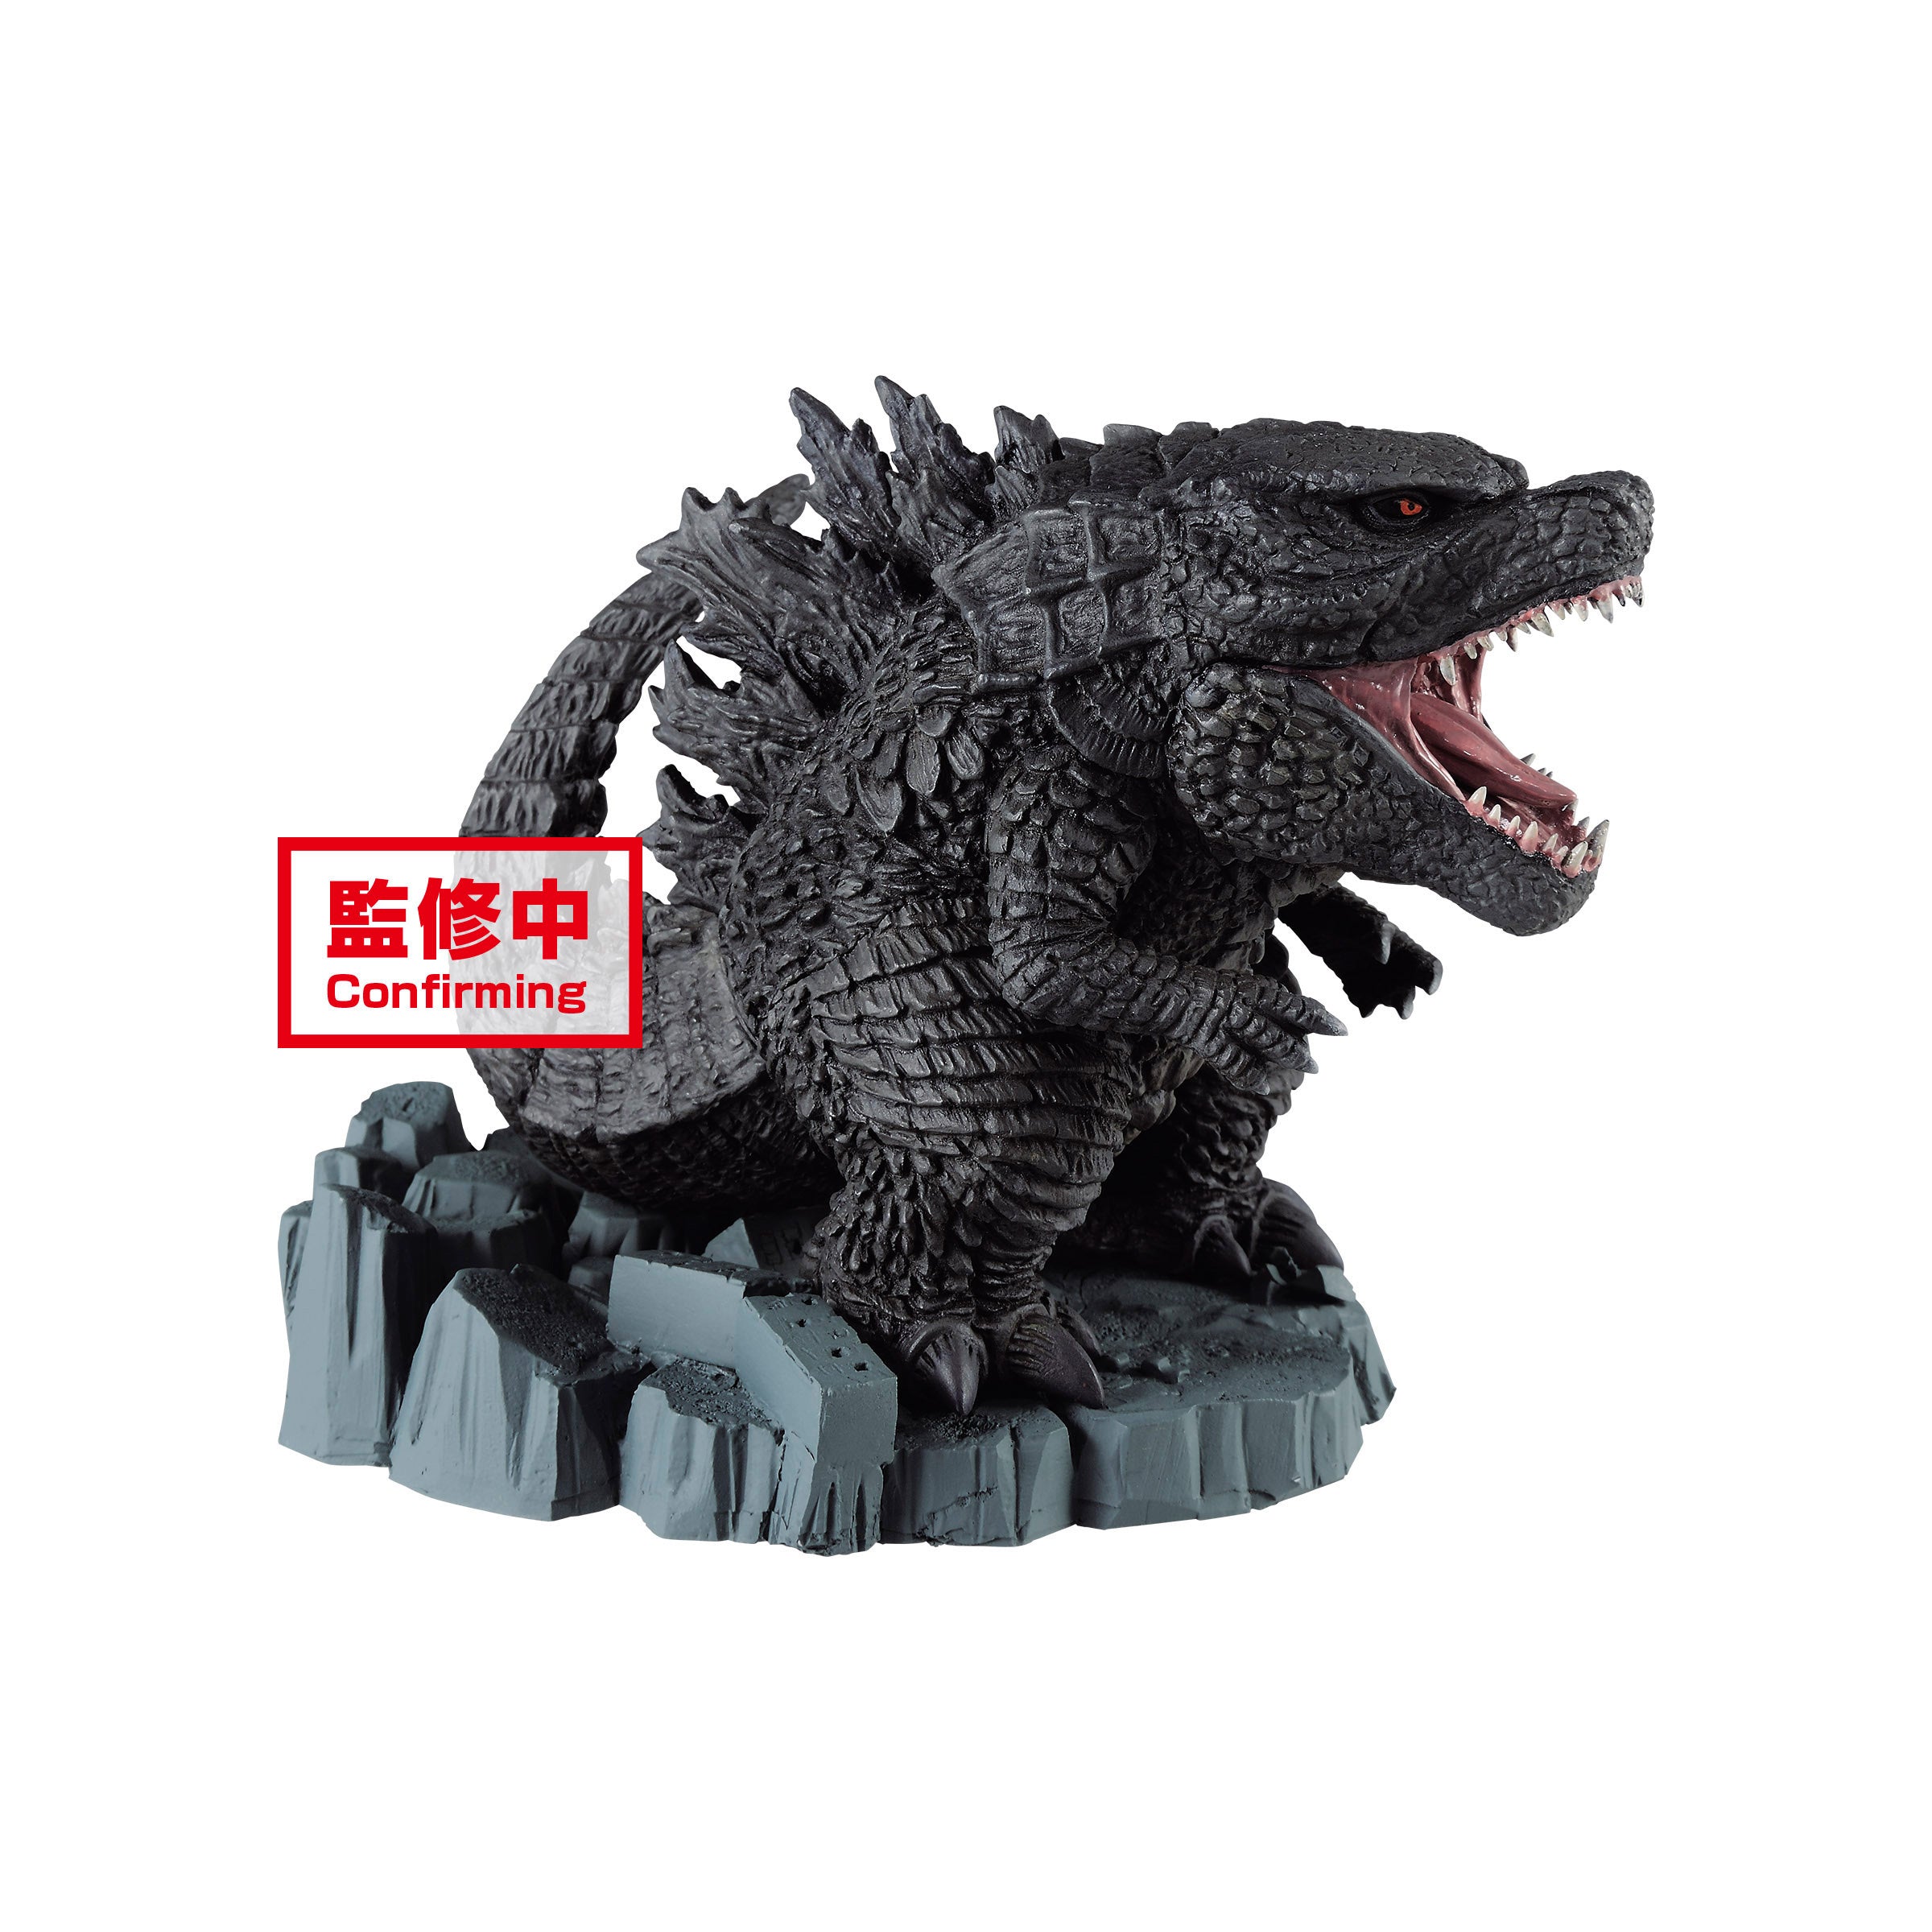 Godzilla - Godzilla King of the Monsters Figure 9cm